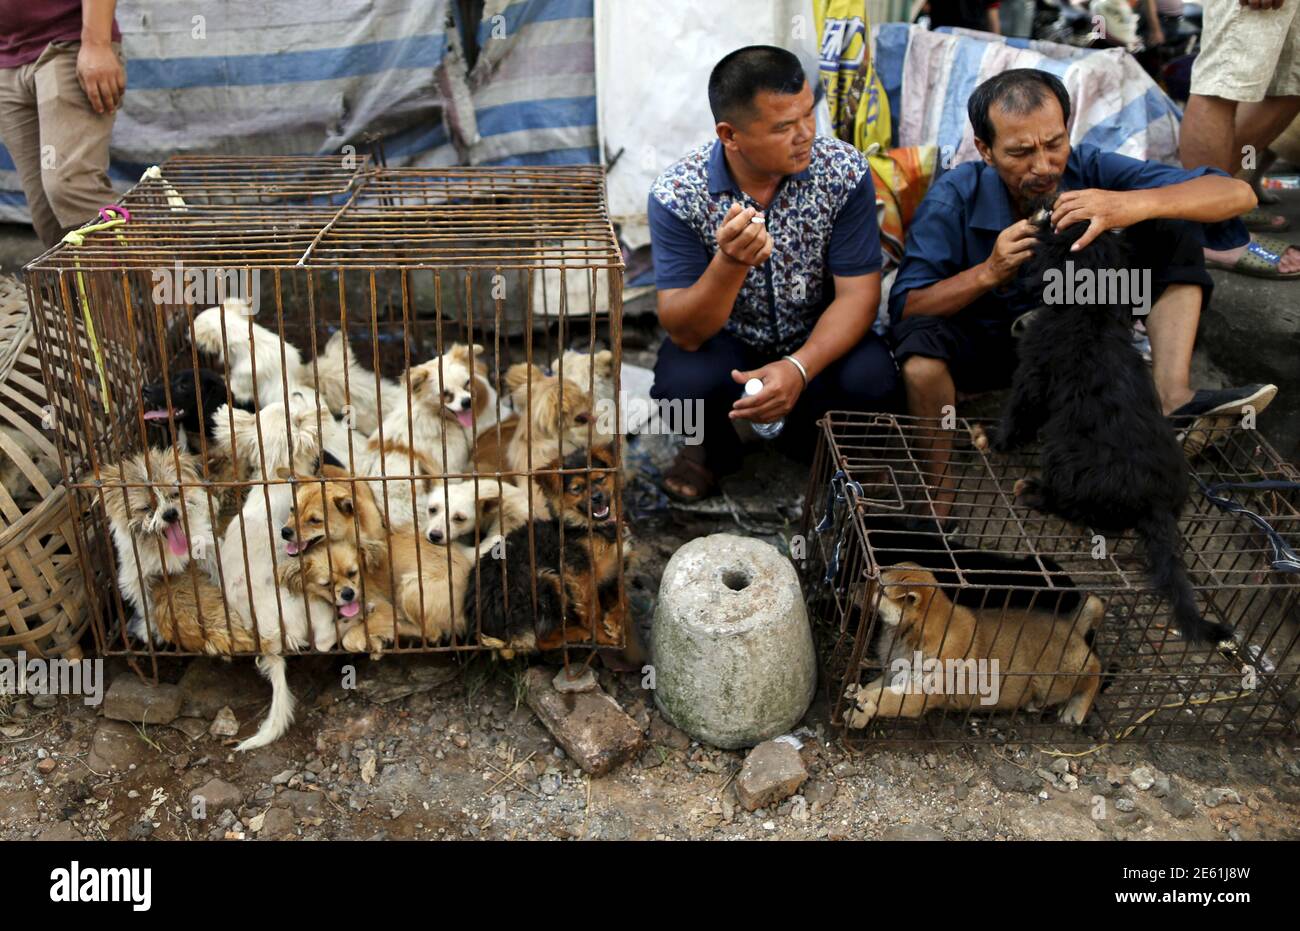 Händler warten auf Kunden, da Hunde auf dem Hundemarkt Dashichang im  Vorfeld eines lokalen Hundefleischfestivals in Yulin, Autonome Region  Guangxi, am 21. Juni 2015 in einem Käfig gehalten werden. Auf dem Markt